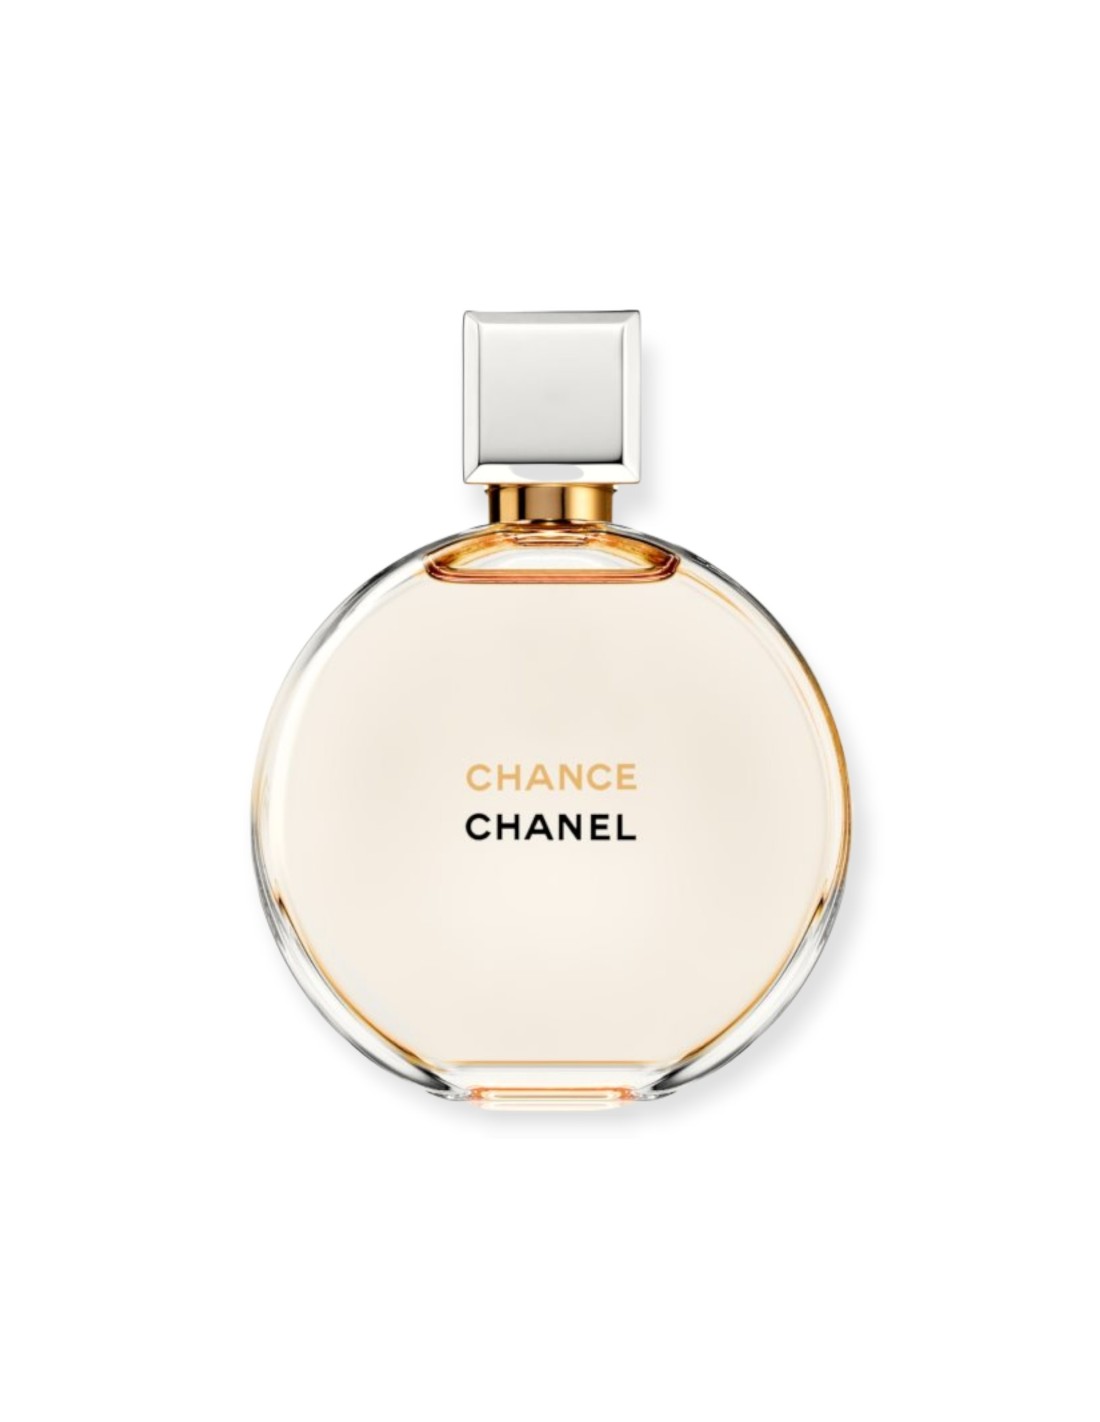 Chanel Chance 100 ml eau de parfum Tester